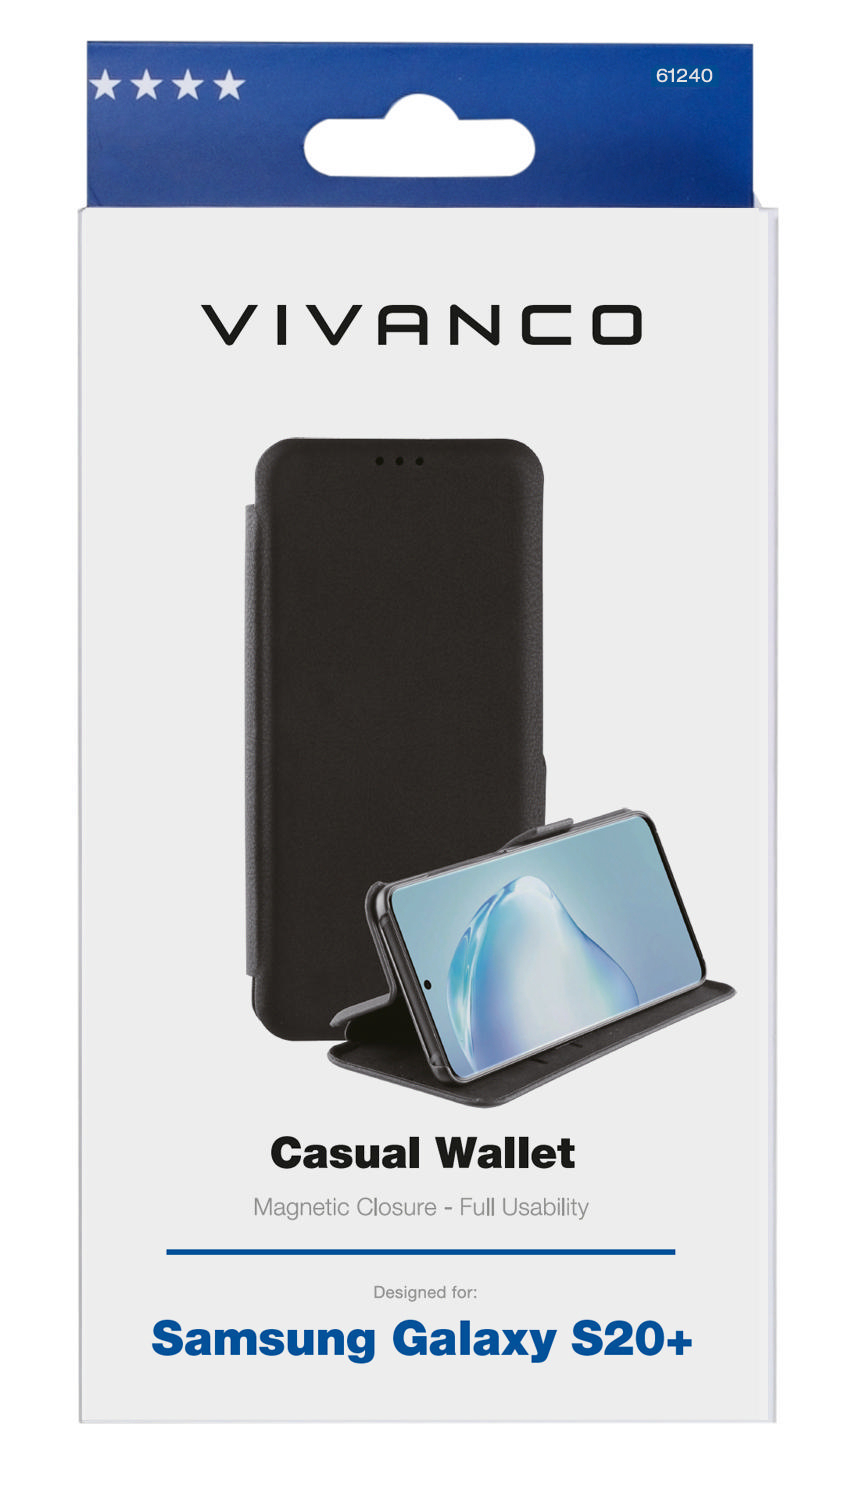 S20+, Samsung, VIVANCO Schwarz Bookcover, Galaxy Wallet, Casual